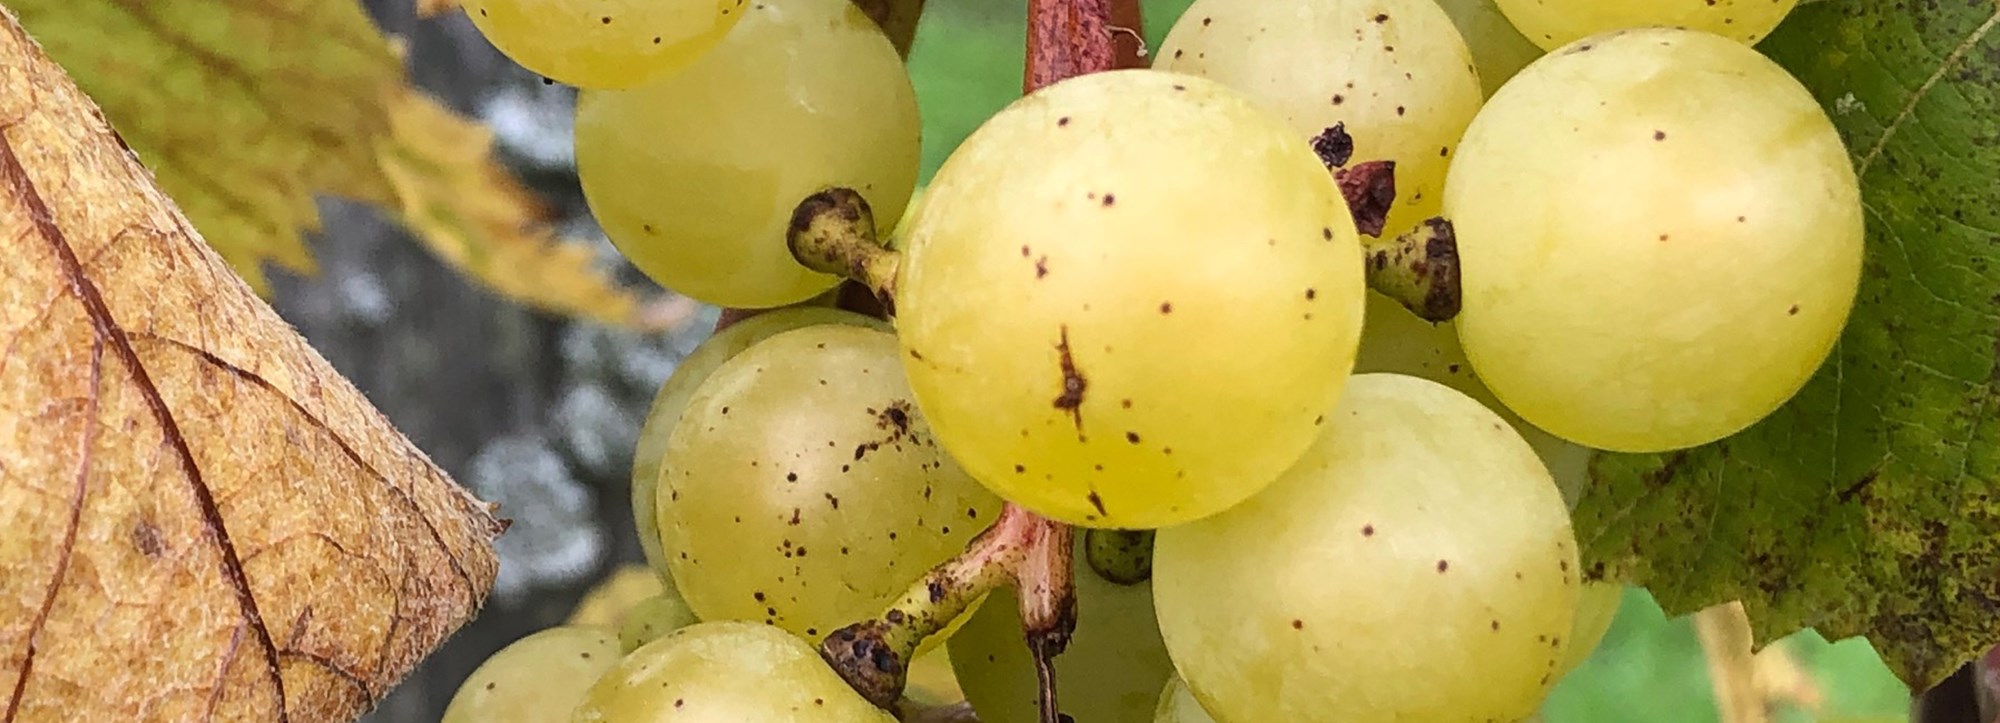 Prova vitt vin av fyra olika druvor